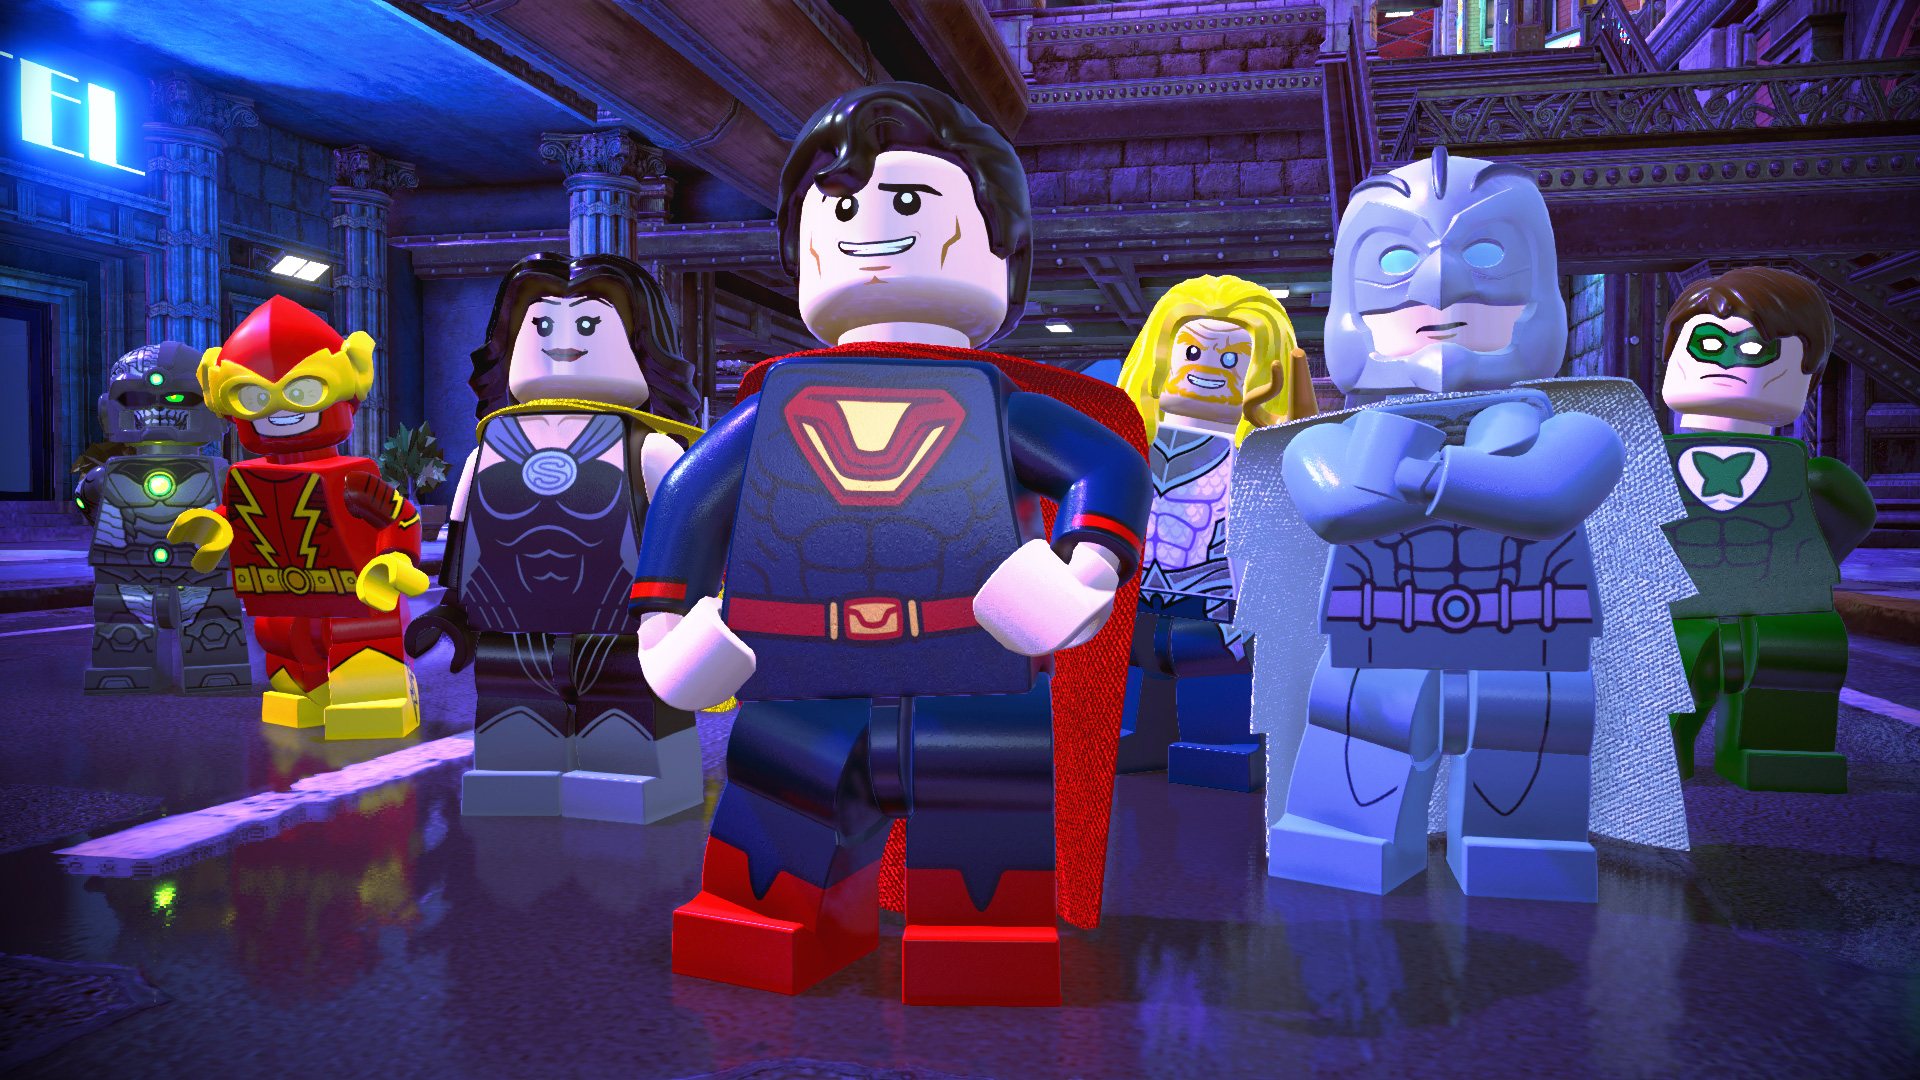 LEGO DC Super-Villains - Season Pass DLC AR XBOX CD Key